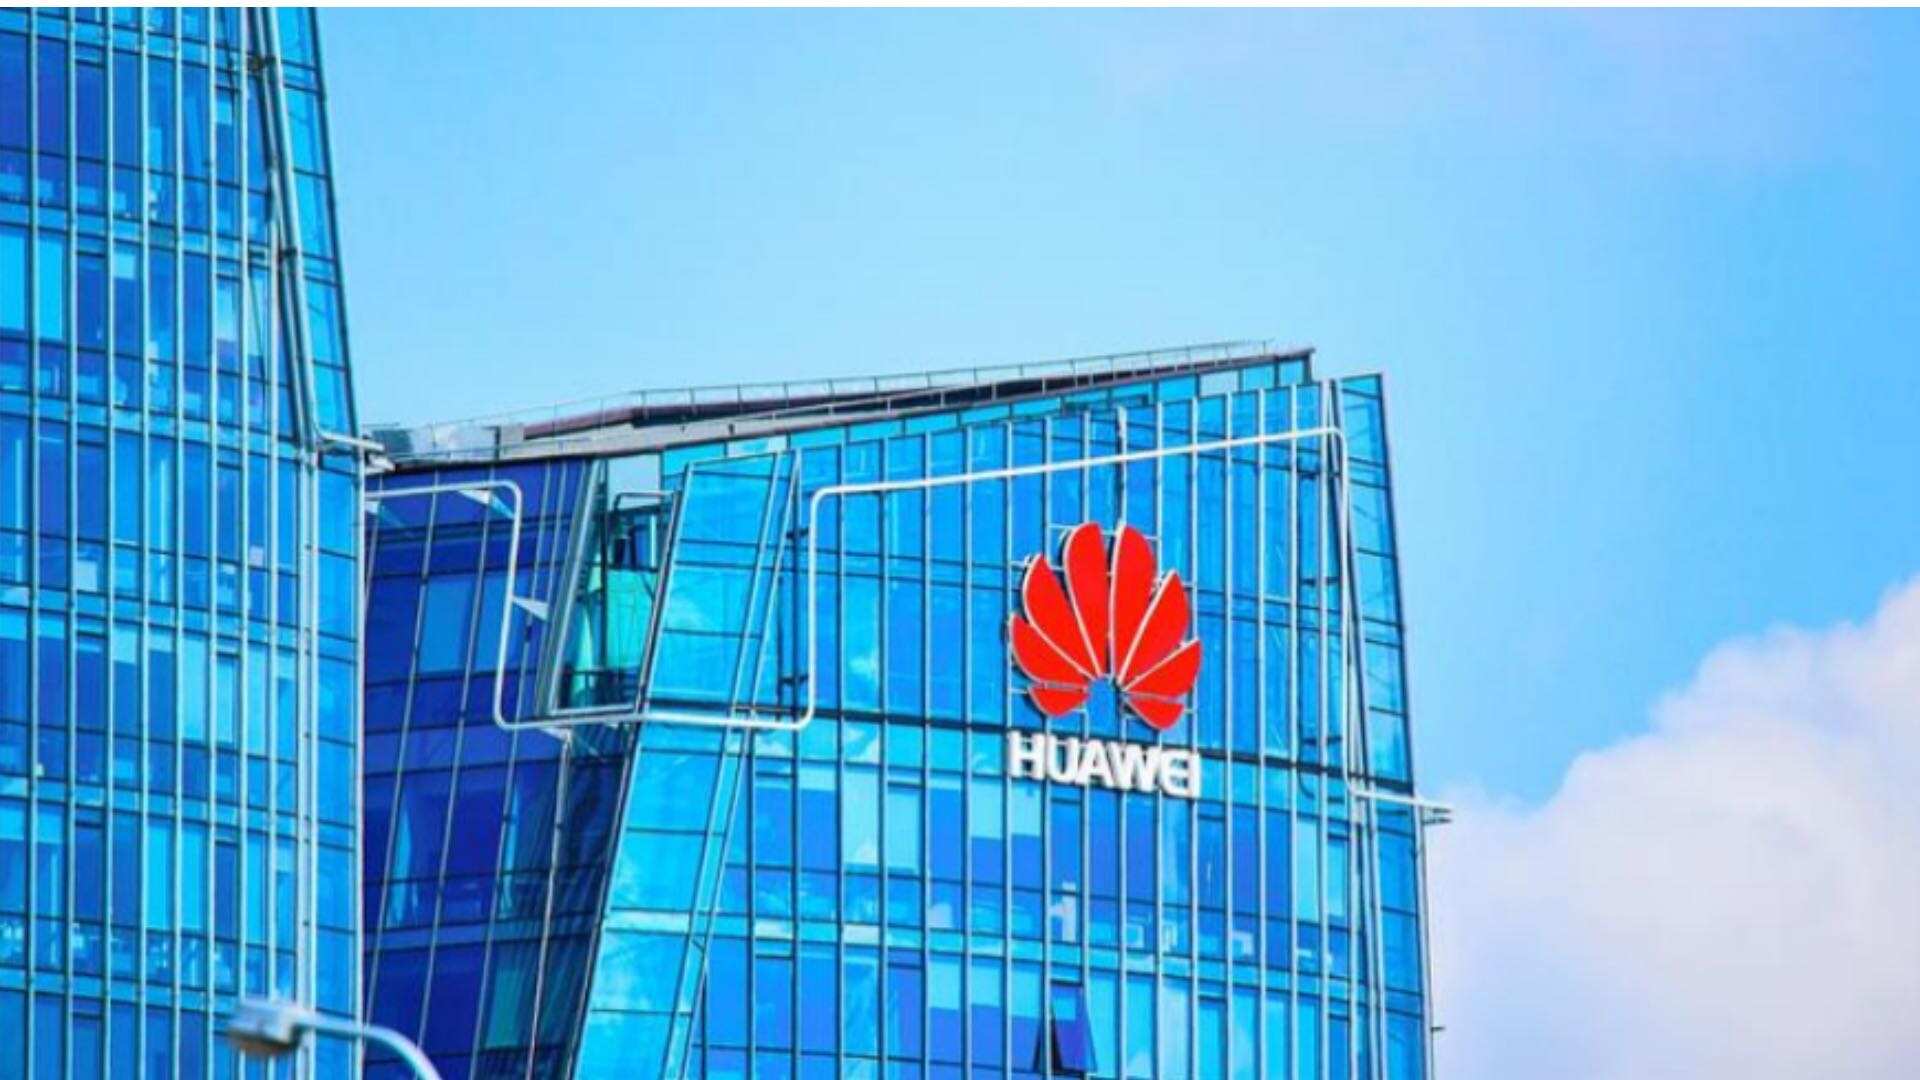 vrouwelijk Regenjas gips Huawei is het enige Chinese merk in de Interbrand Top 100 - GizChina.it